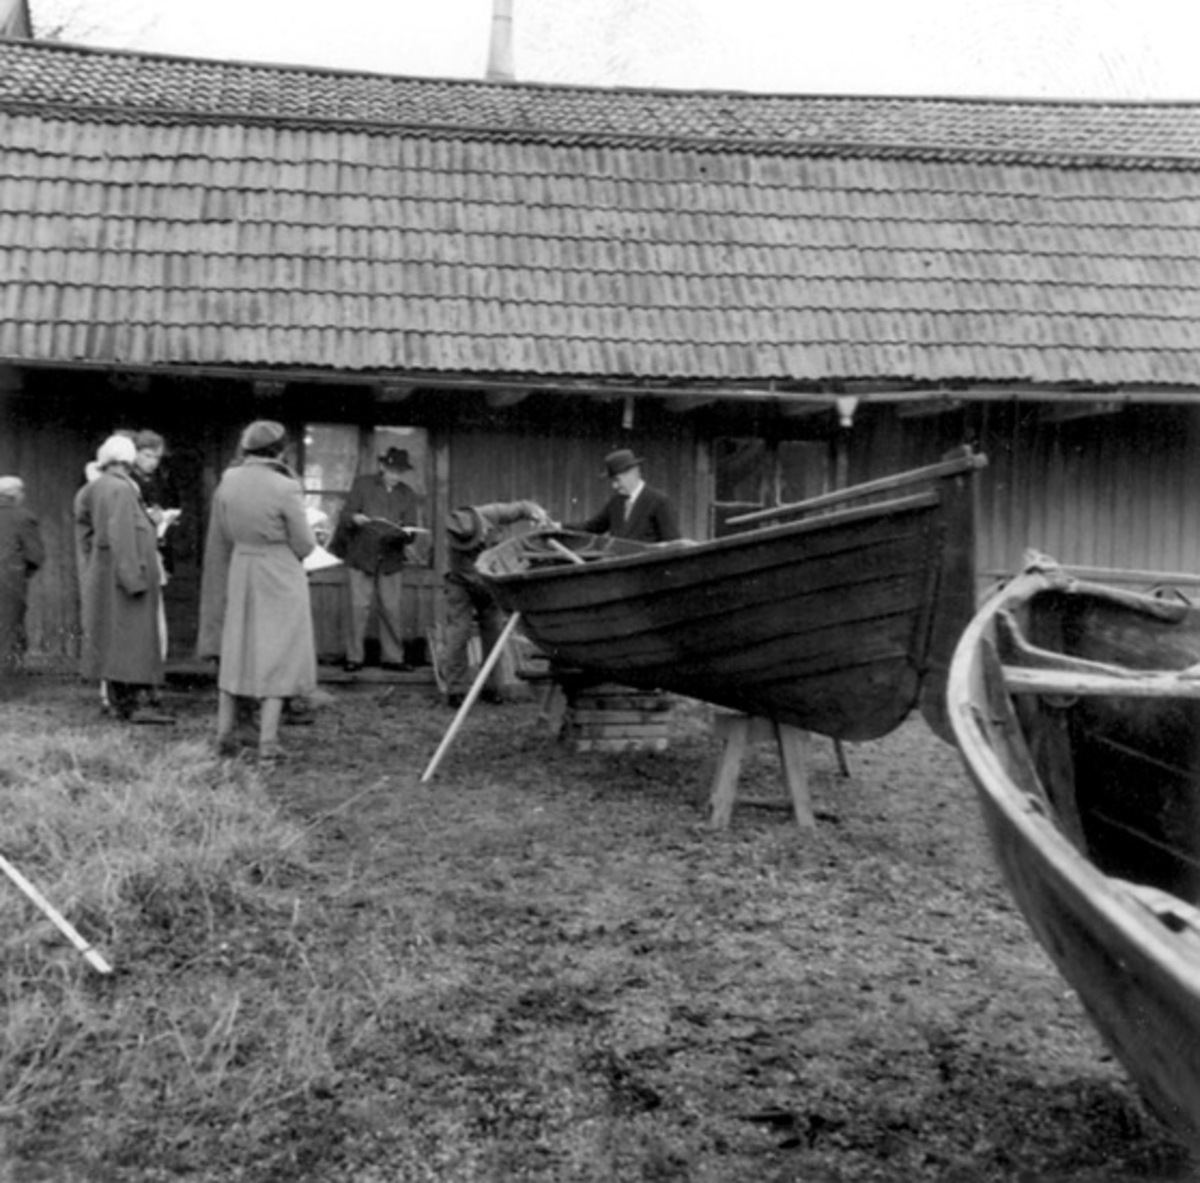 Fotot ät taget: 1958-11-12 - 1958-11-13
Skötbåt byggd av båtbyggare Arvid Engström 1901 för fiskare K. F. Juhlberg, båda från Vaxholm.
Stockholms högskolas kurs i båtuppmätning 12-13 Nov. 1958.